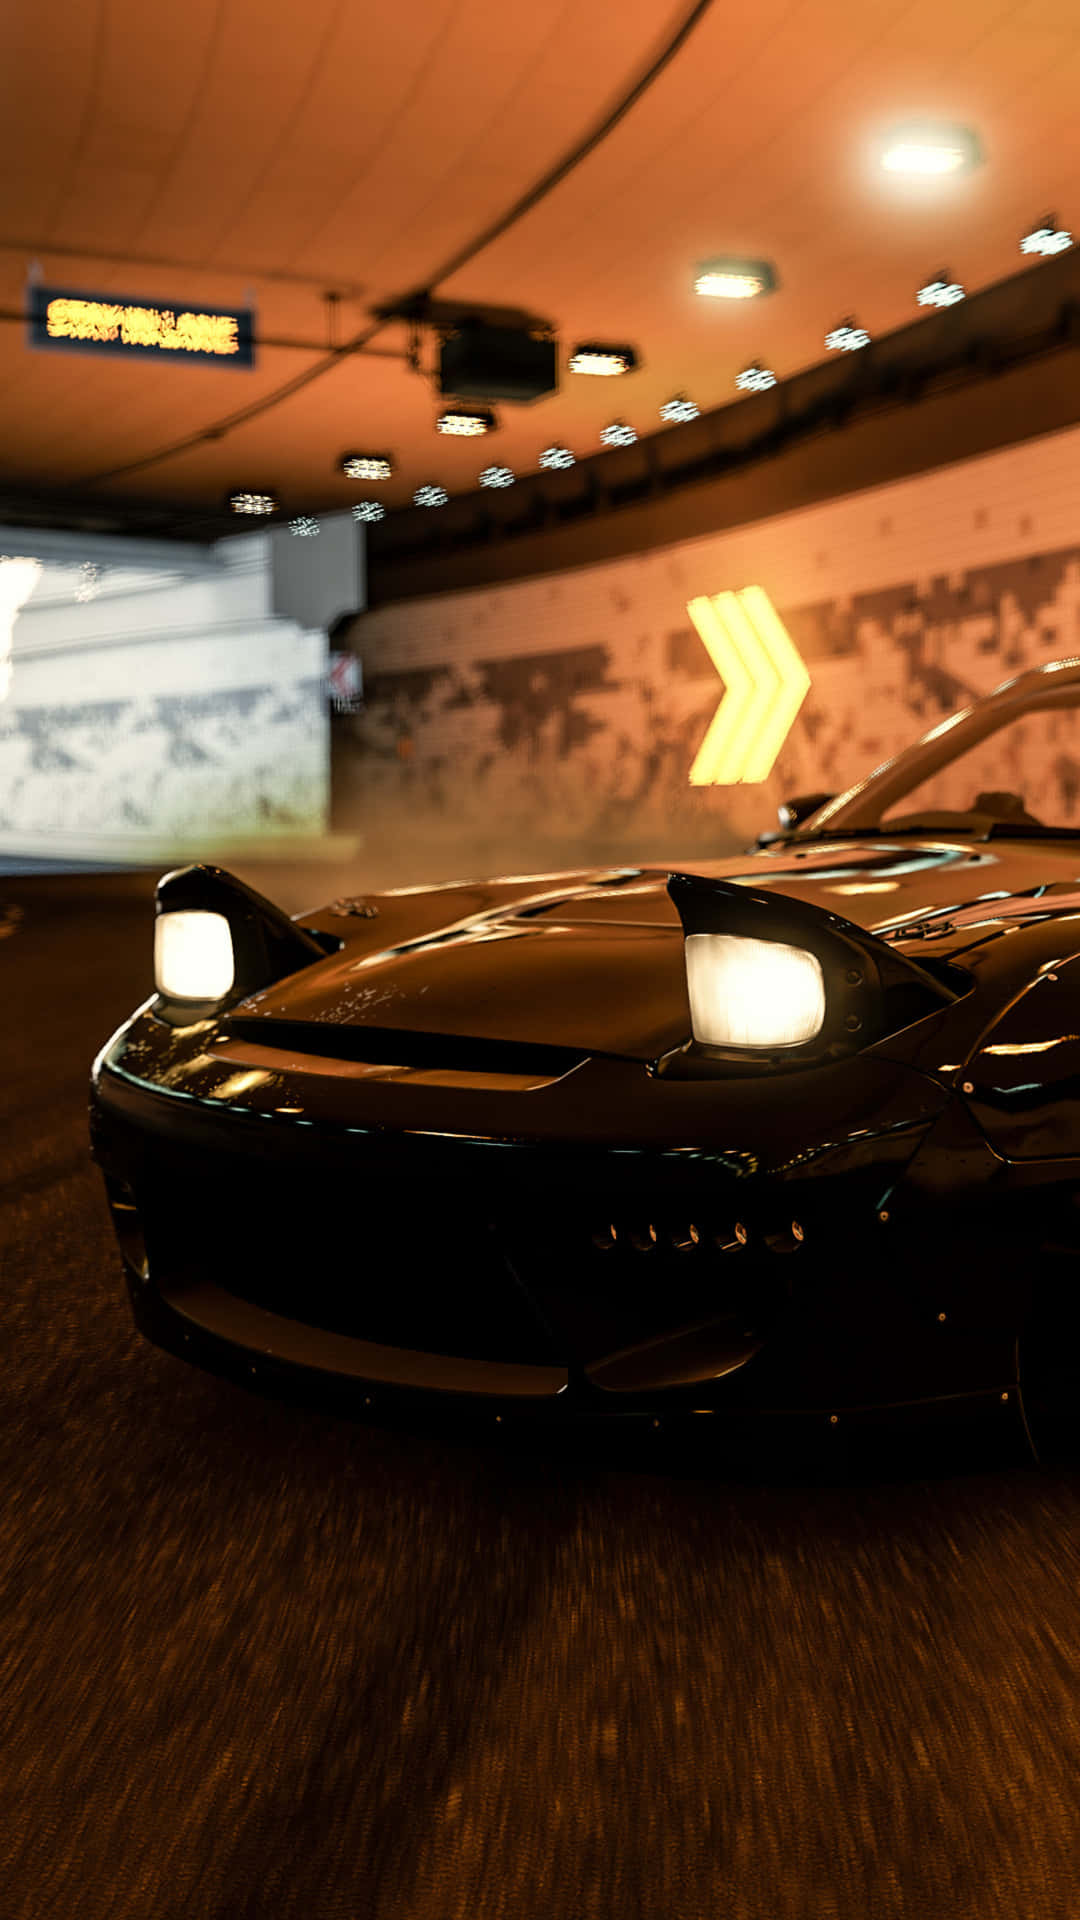 4k Forza Motorsport 7 Glossy Black Mazda Rx-7 Background